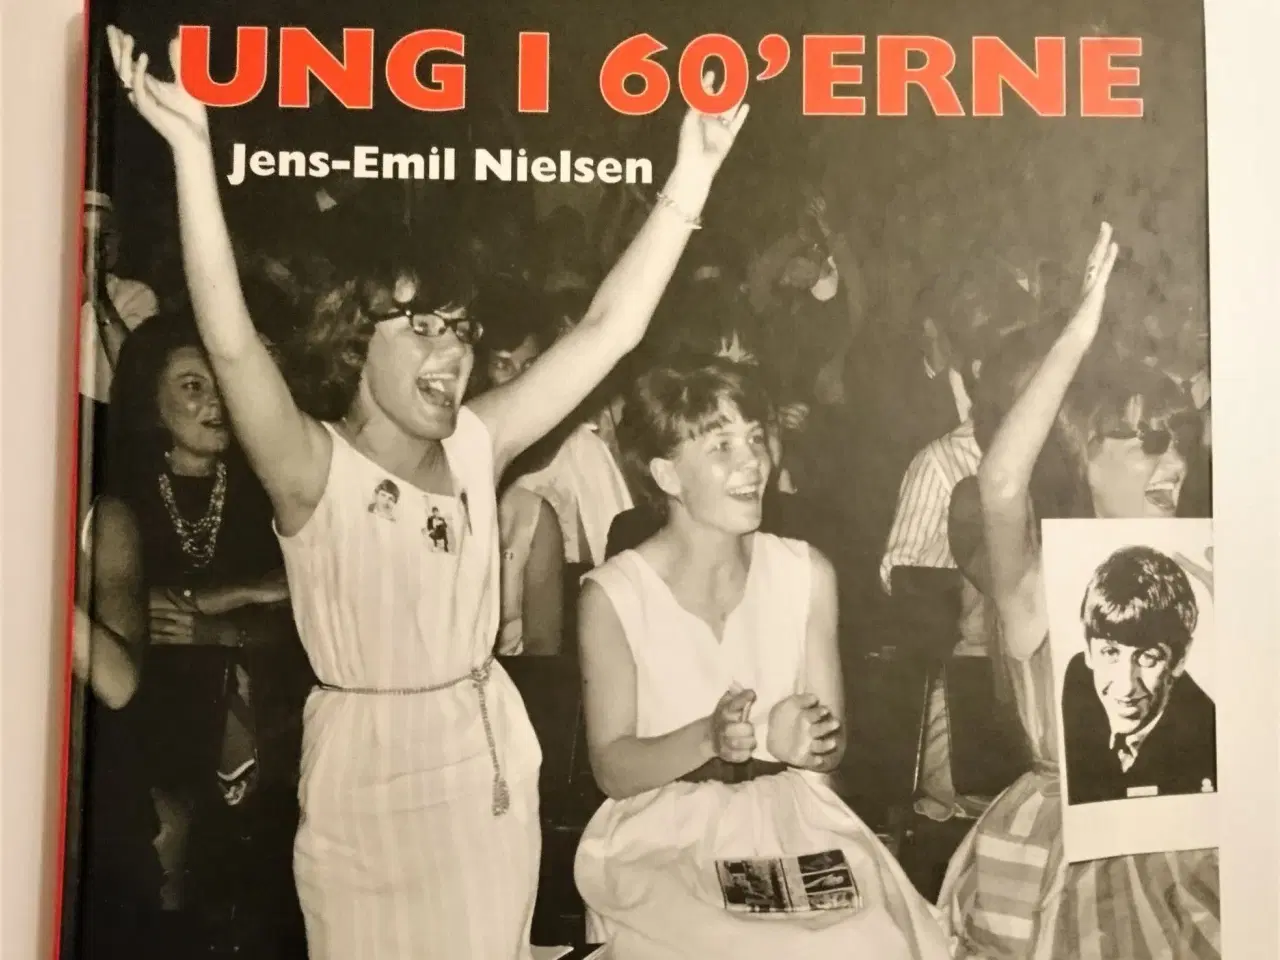 Billede 1 - Ung i 60'erne. Af Jens-Emil Nielsen